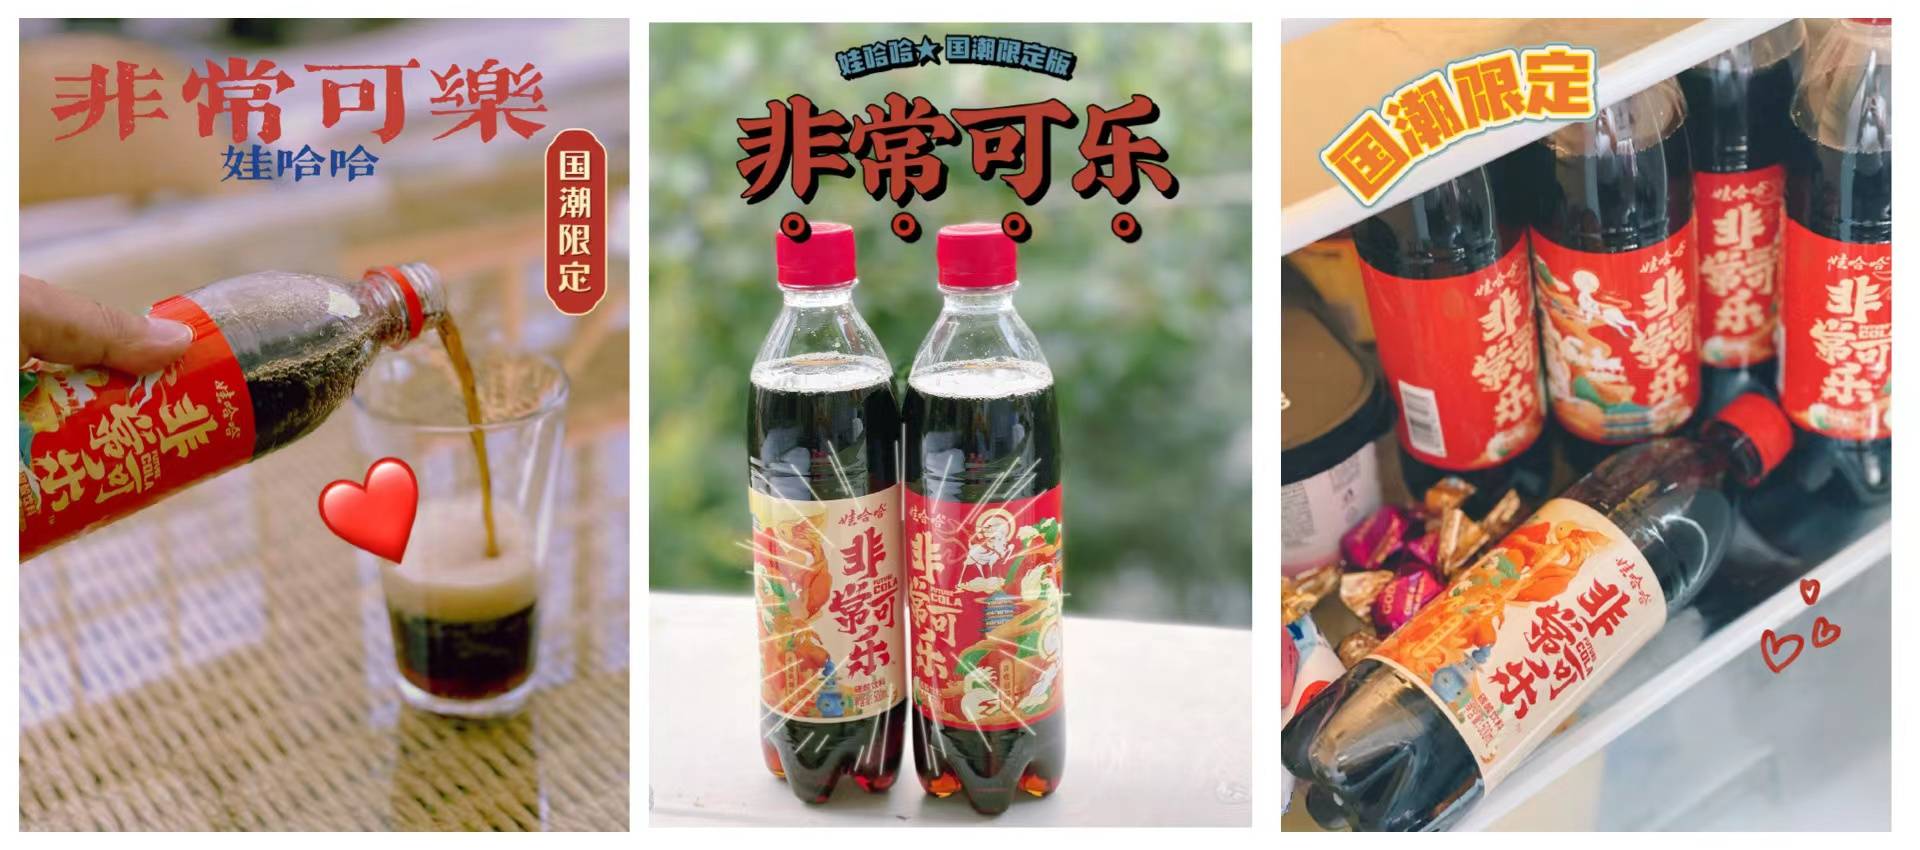 WechatIMG2576 - La “Chinese Coke” risorge, ma non sarà la Coca a battere la Coca-Pepsi